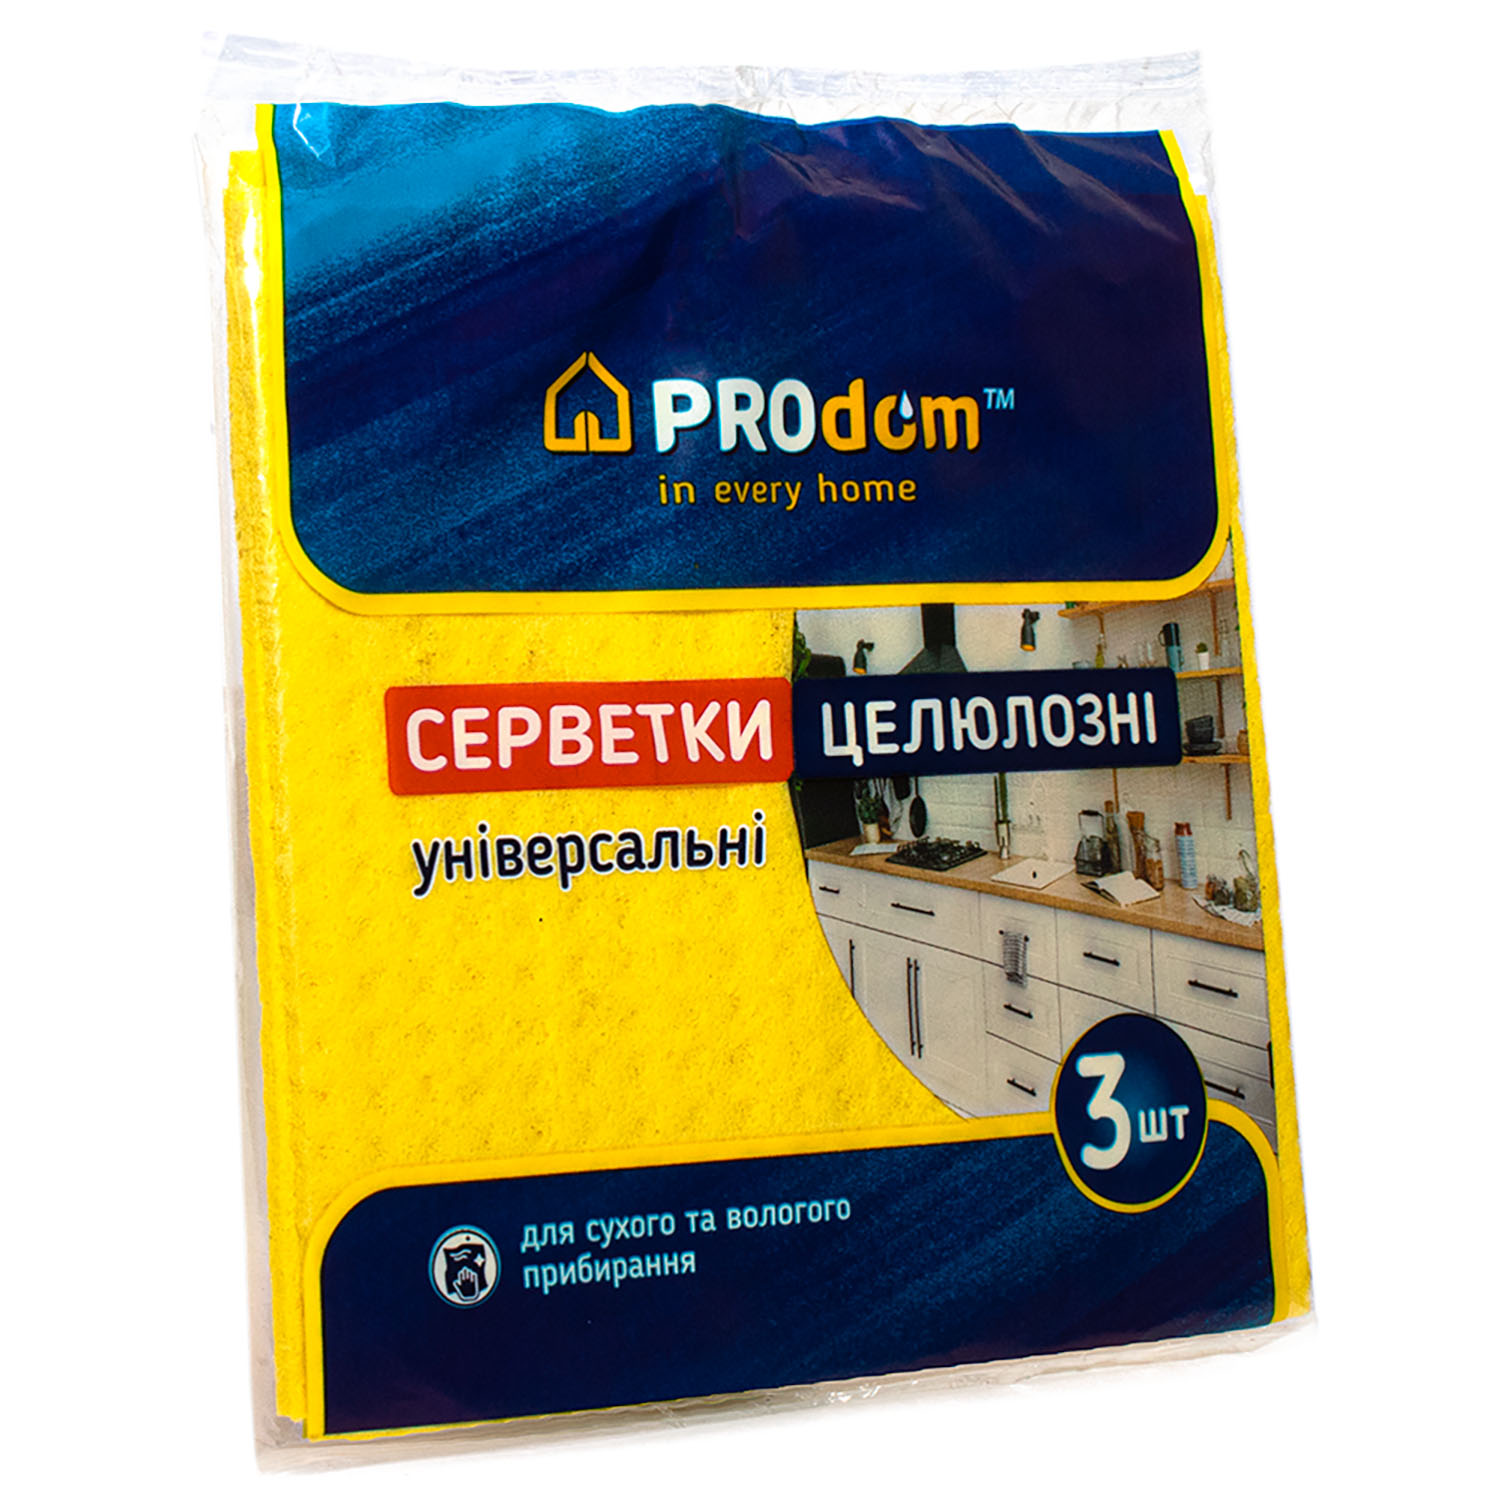 Салфетки целлюлозные Prodom 15.5 см х 15.5 см 3 шт. - фото 1